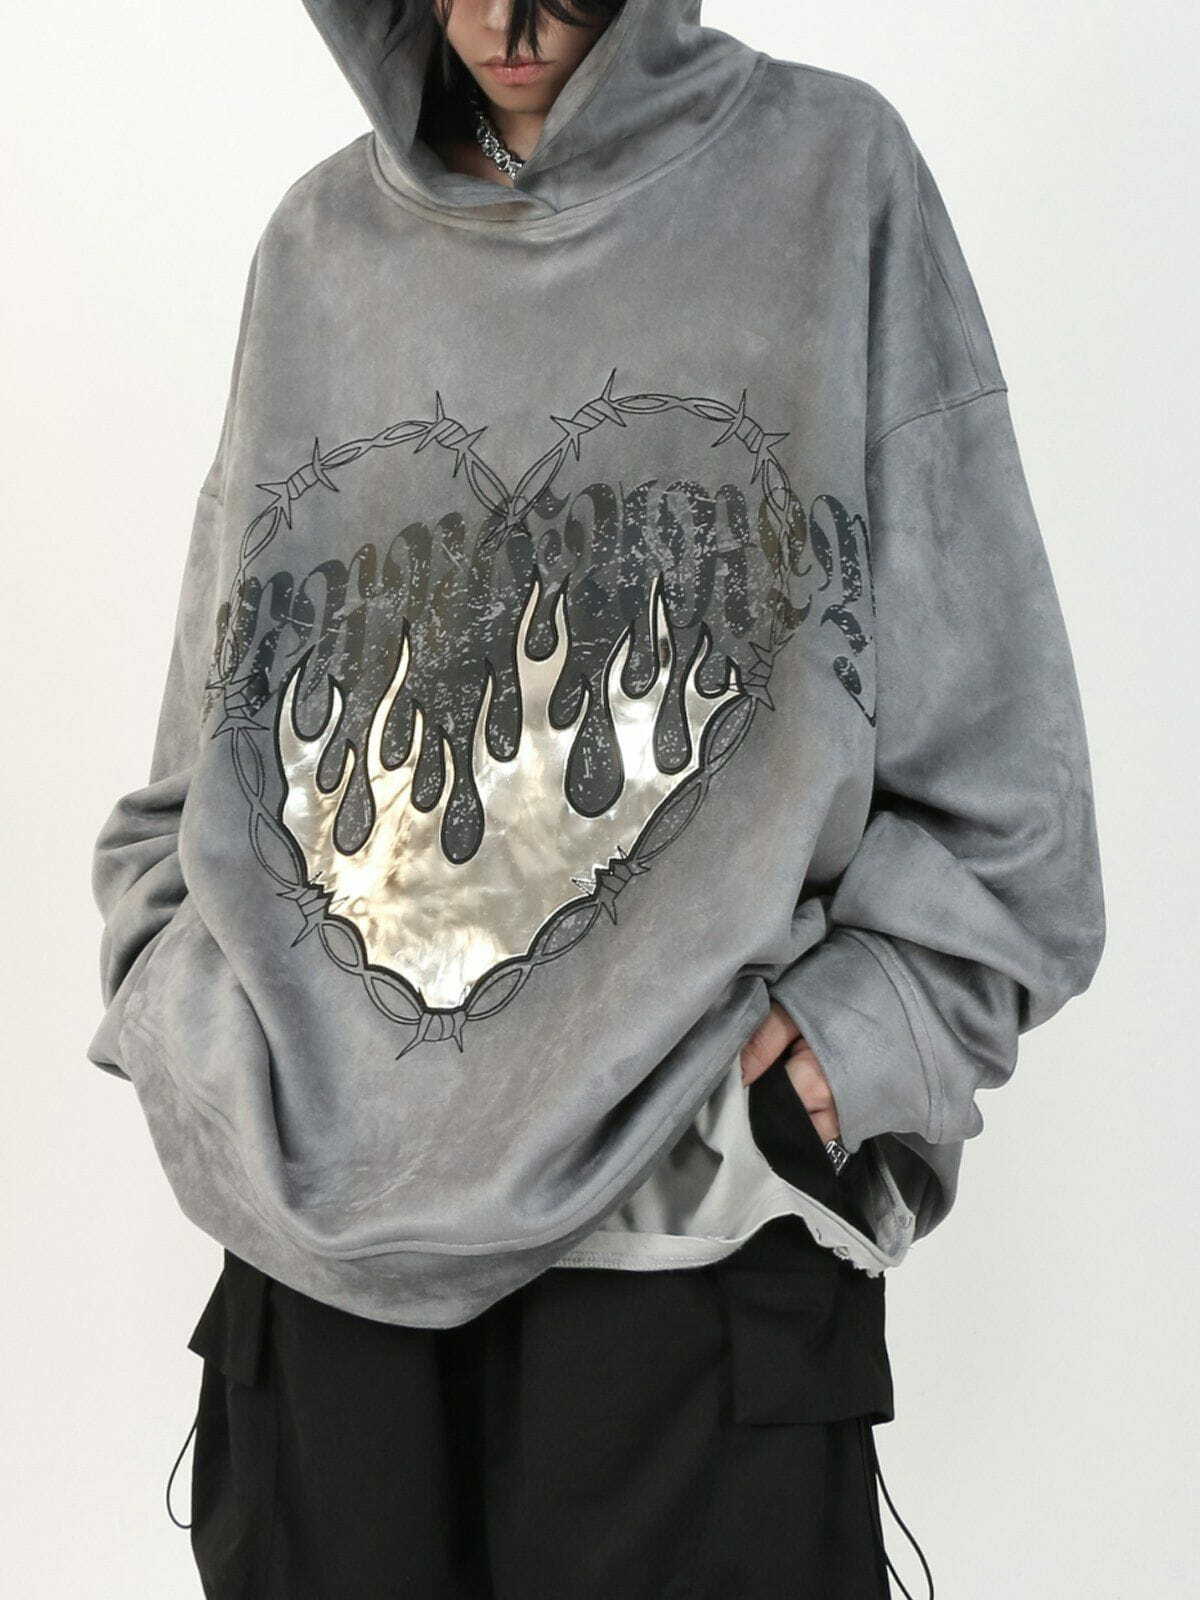 flame suede hoodie edgy & vibrant streetwear 3733